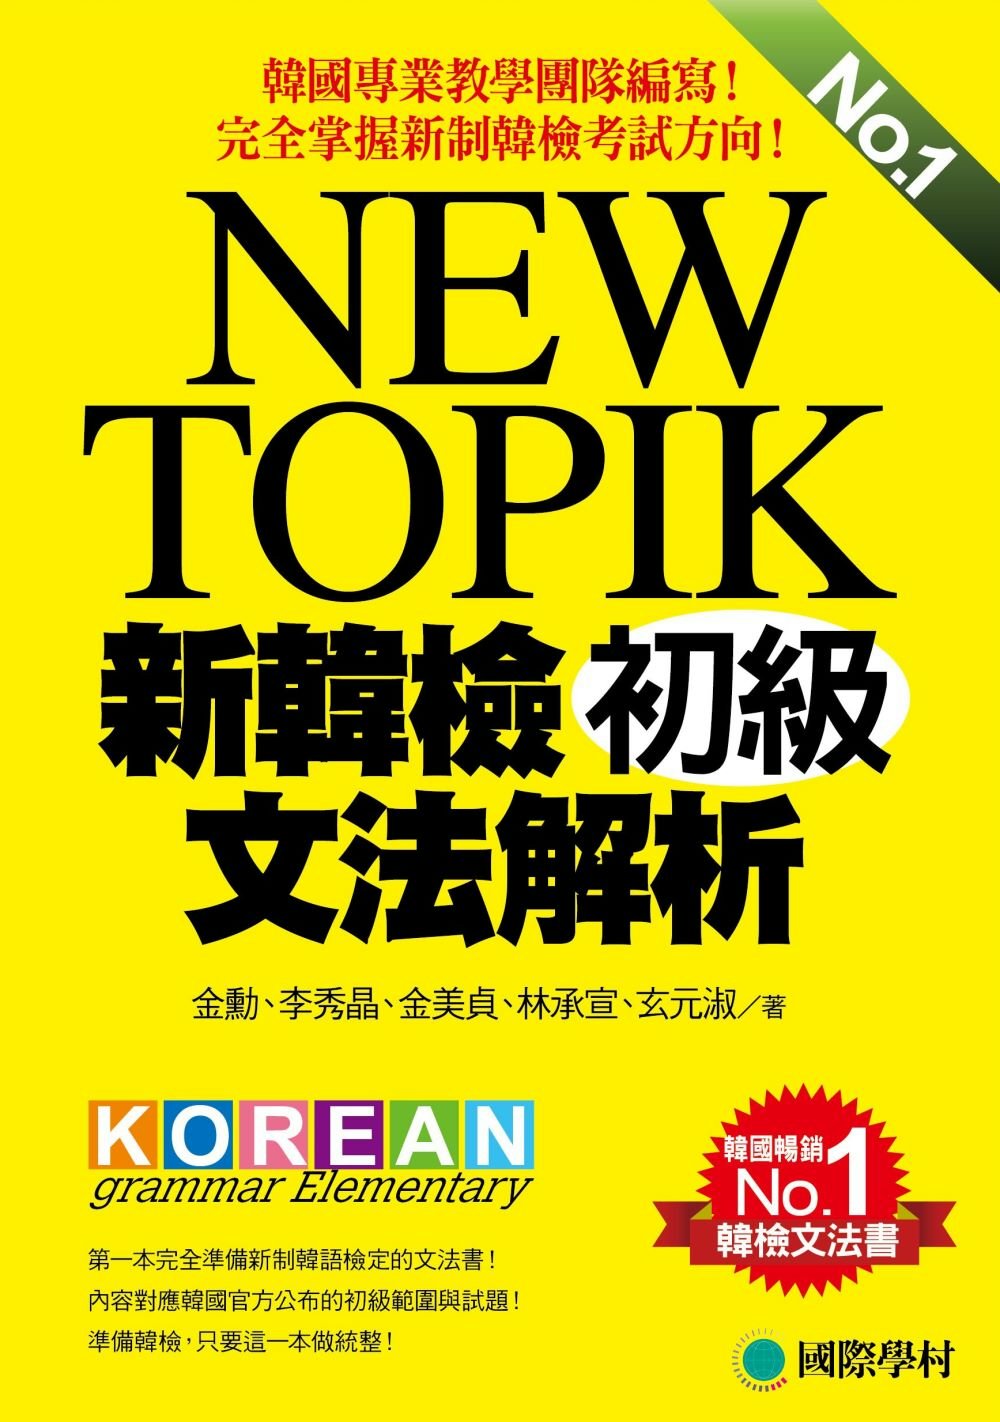 NEW TOPIK 新韓檢初級文法解析：韓國專業教學團隊編寫，完全掌握新制韓檢考試方向！